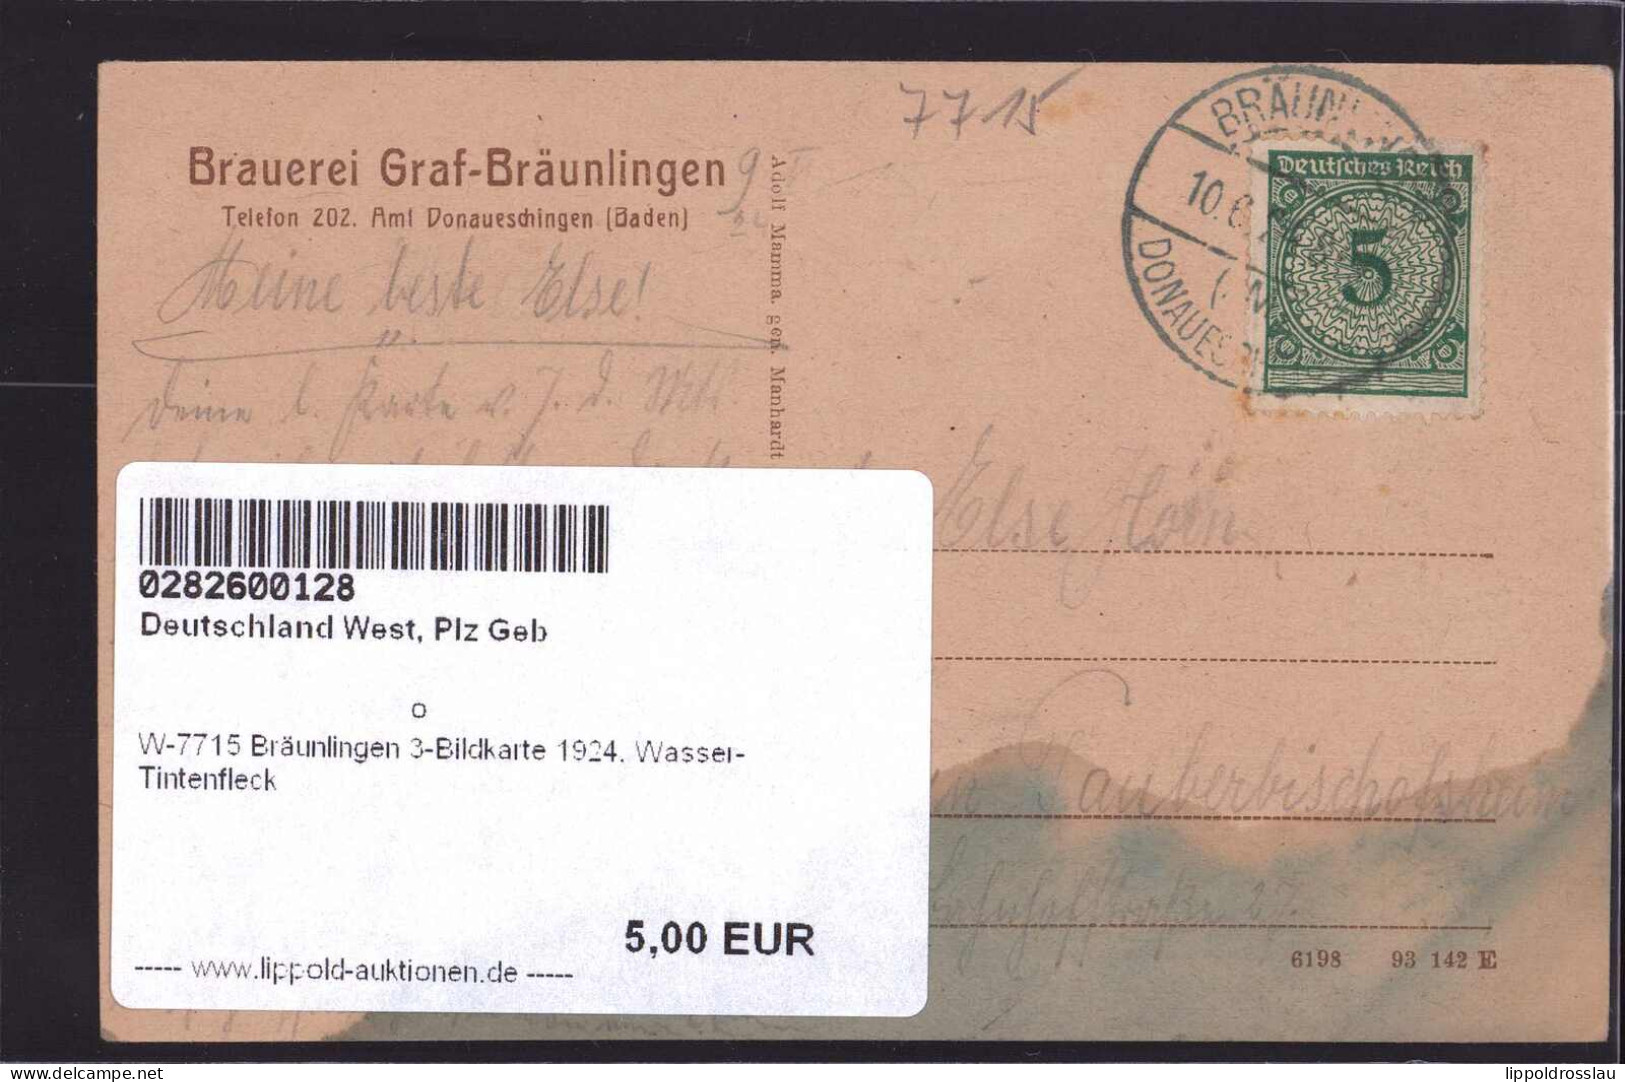 Gest. W-7715 Bräunlingen 3-Bildkarte 1924, Wasser-Tintenfleck - Donaueschingen